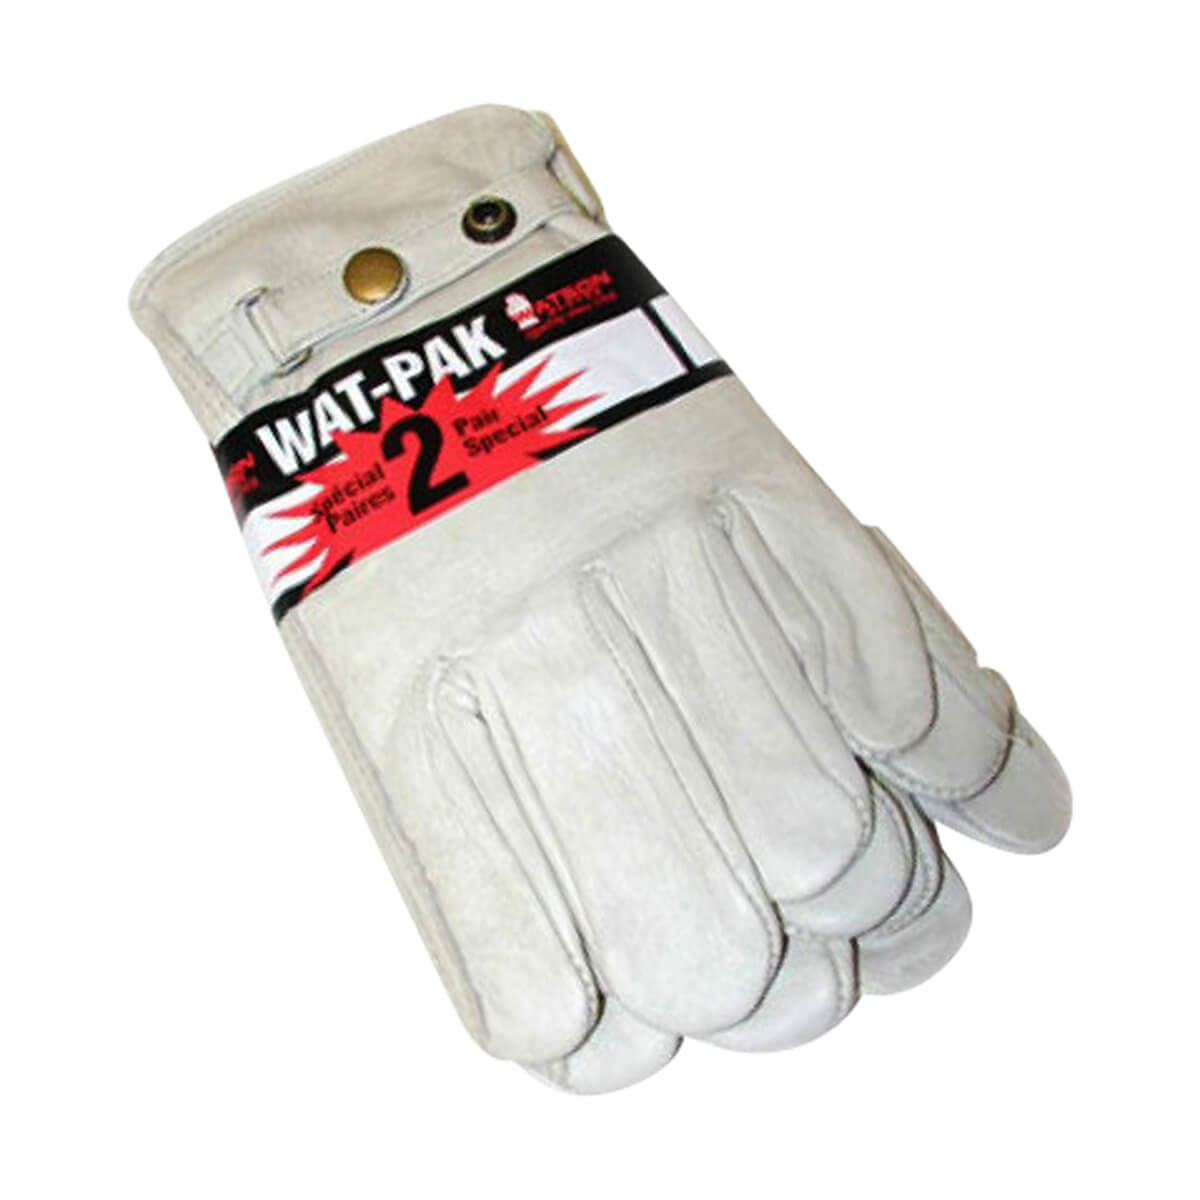 Wat Pak Gloves - 2 pack